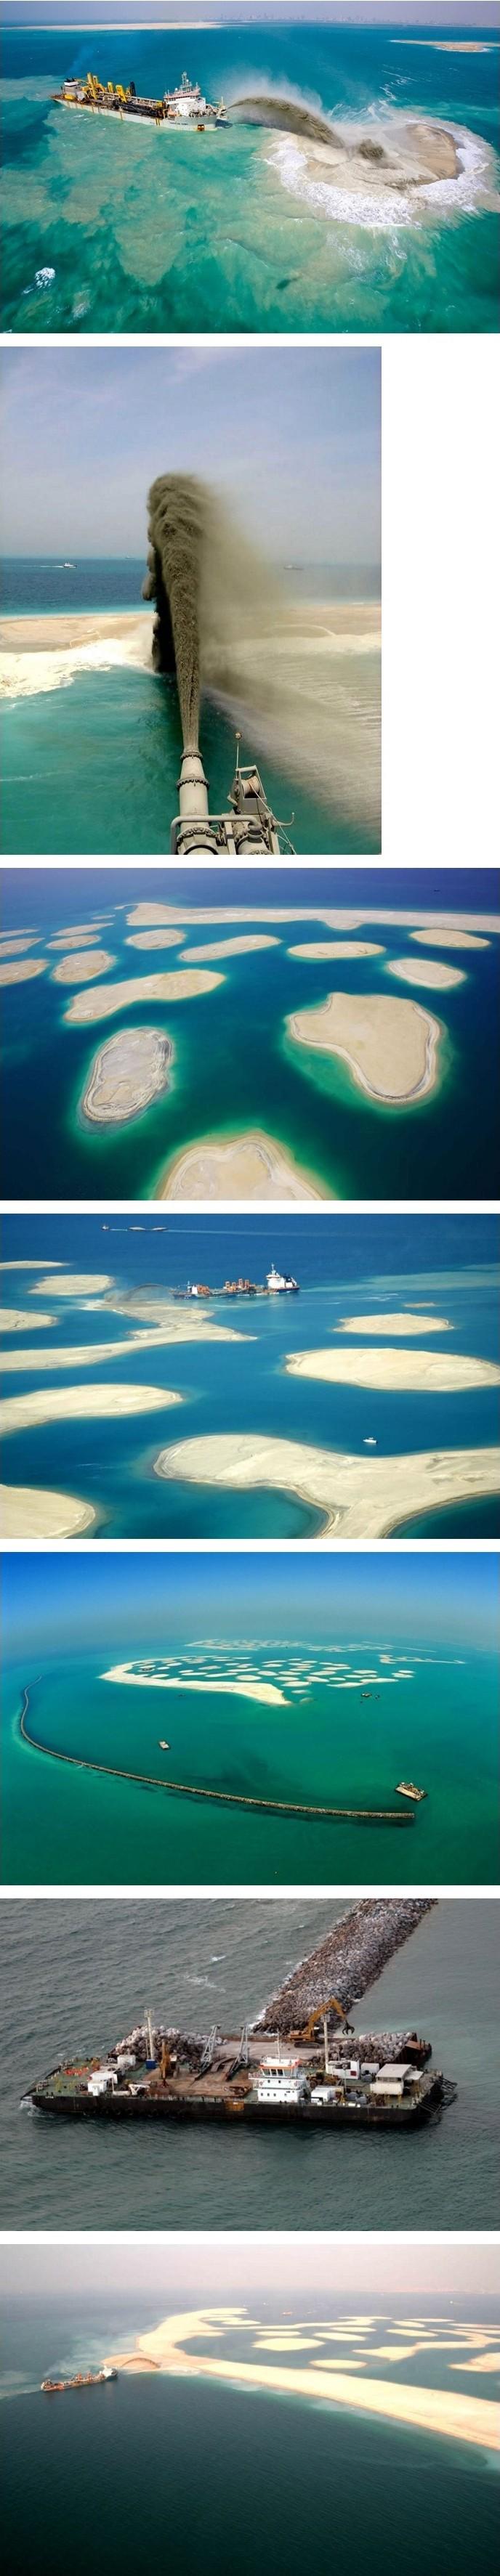 두바이 인공섬 만들기.jpg